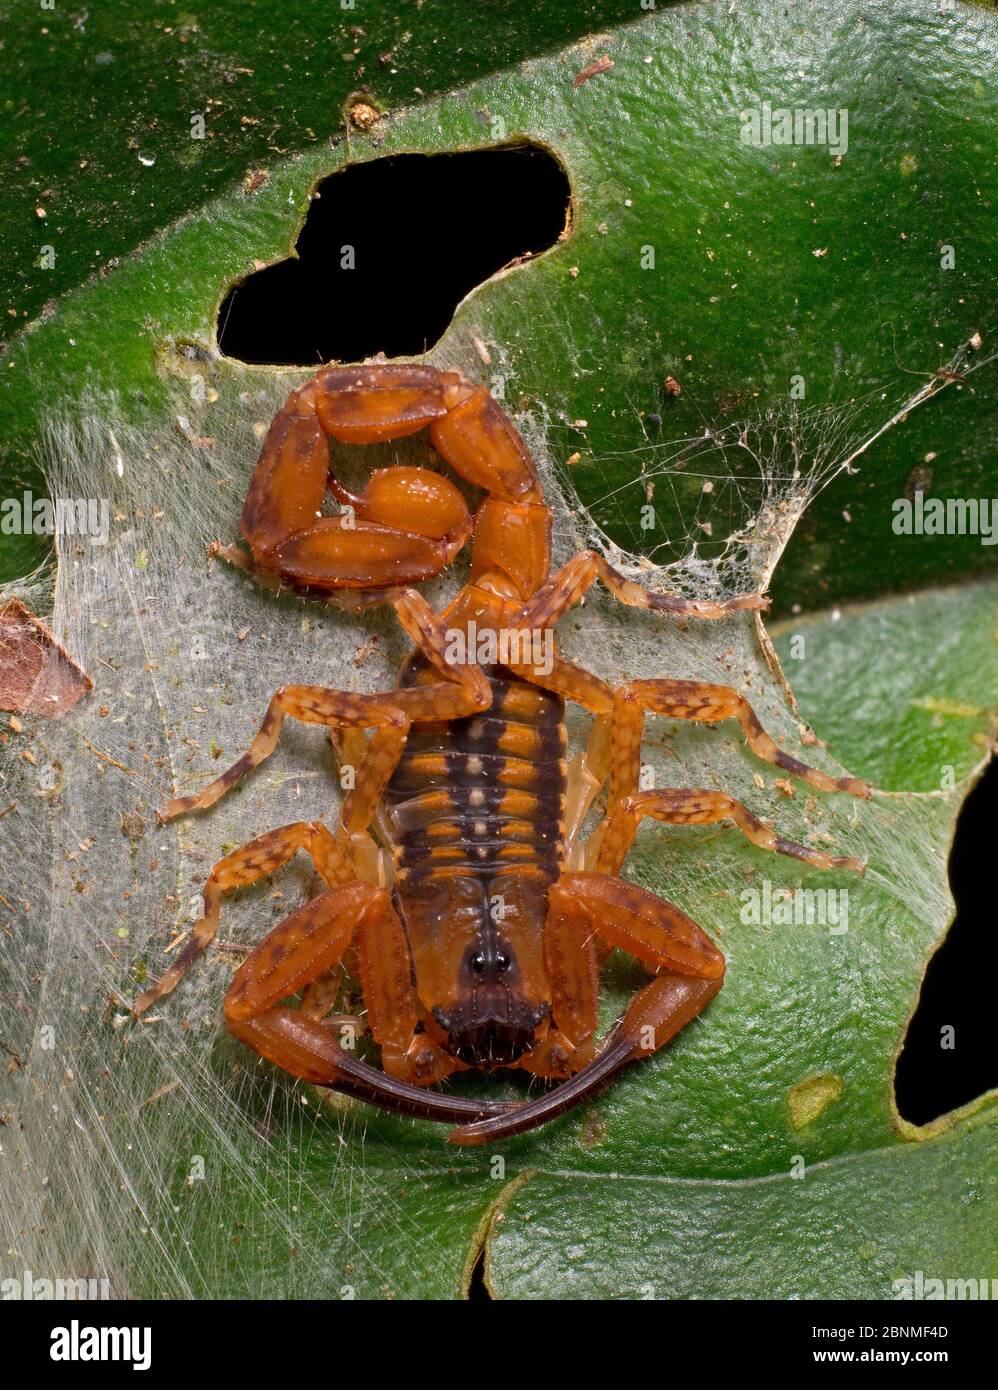 Scorpion (Tityus cerroazul) une des espèces de scorpion les plus toxiques d'Amérique centrale. Réserve naturelle de cocobolo, Panama. Banque D'Images